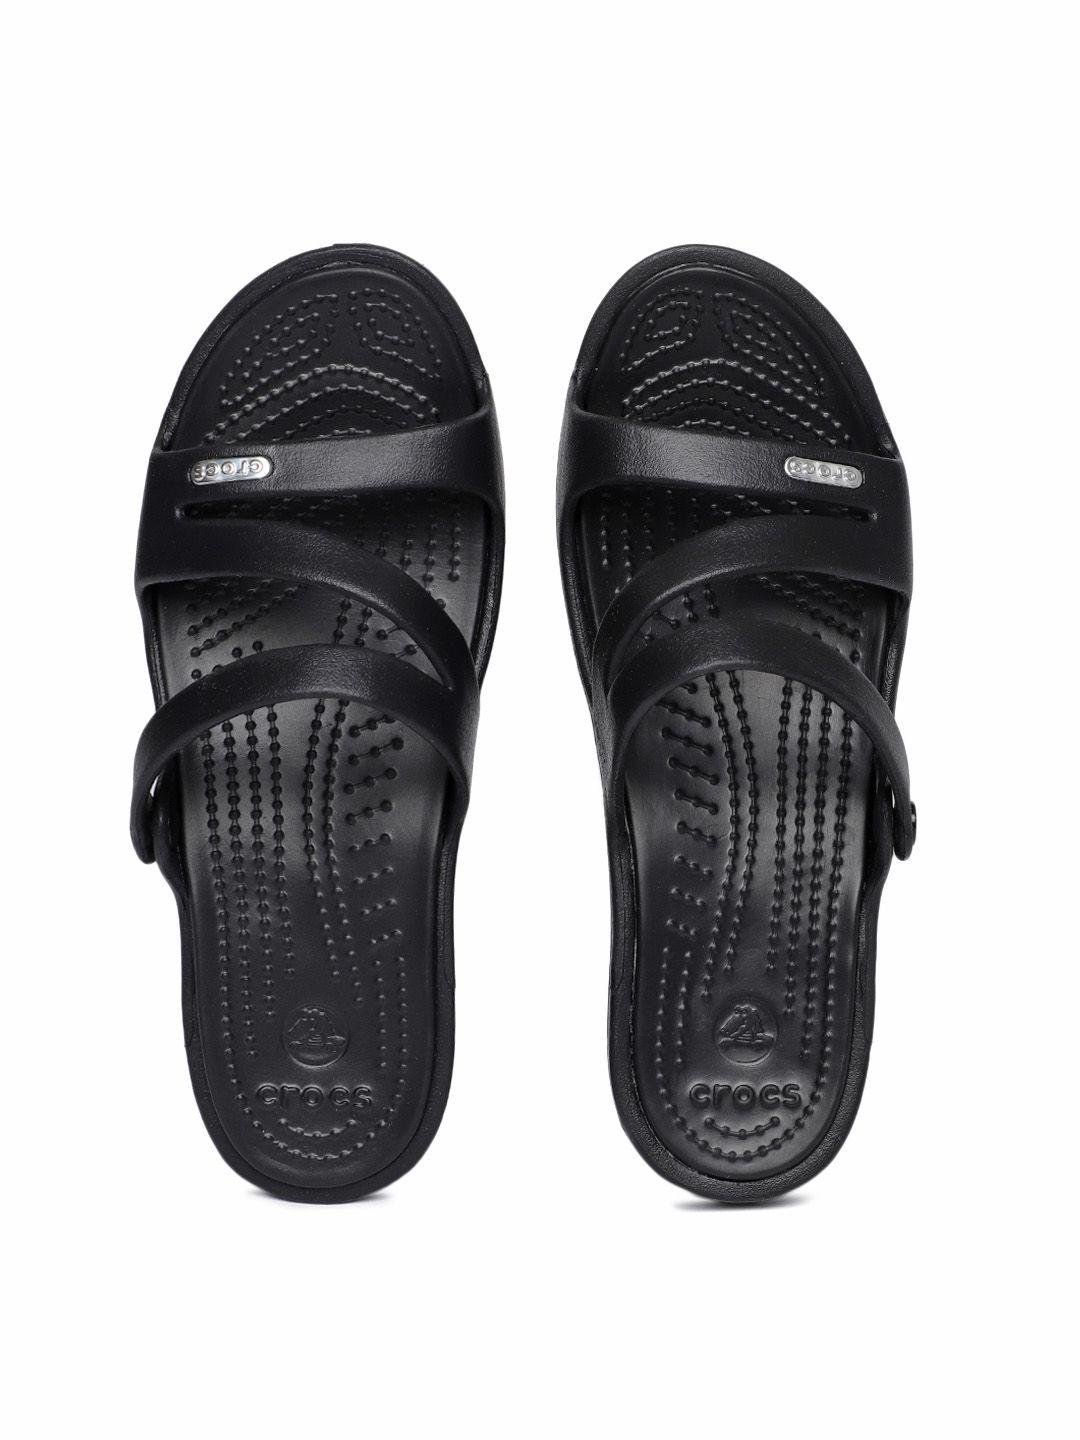 crocs-women-black-solid-comfort-sandals